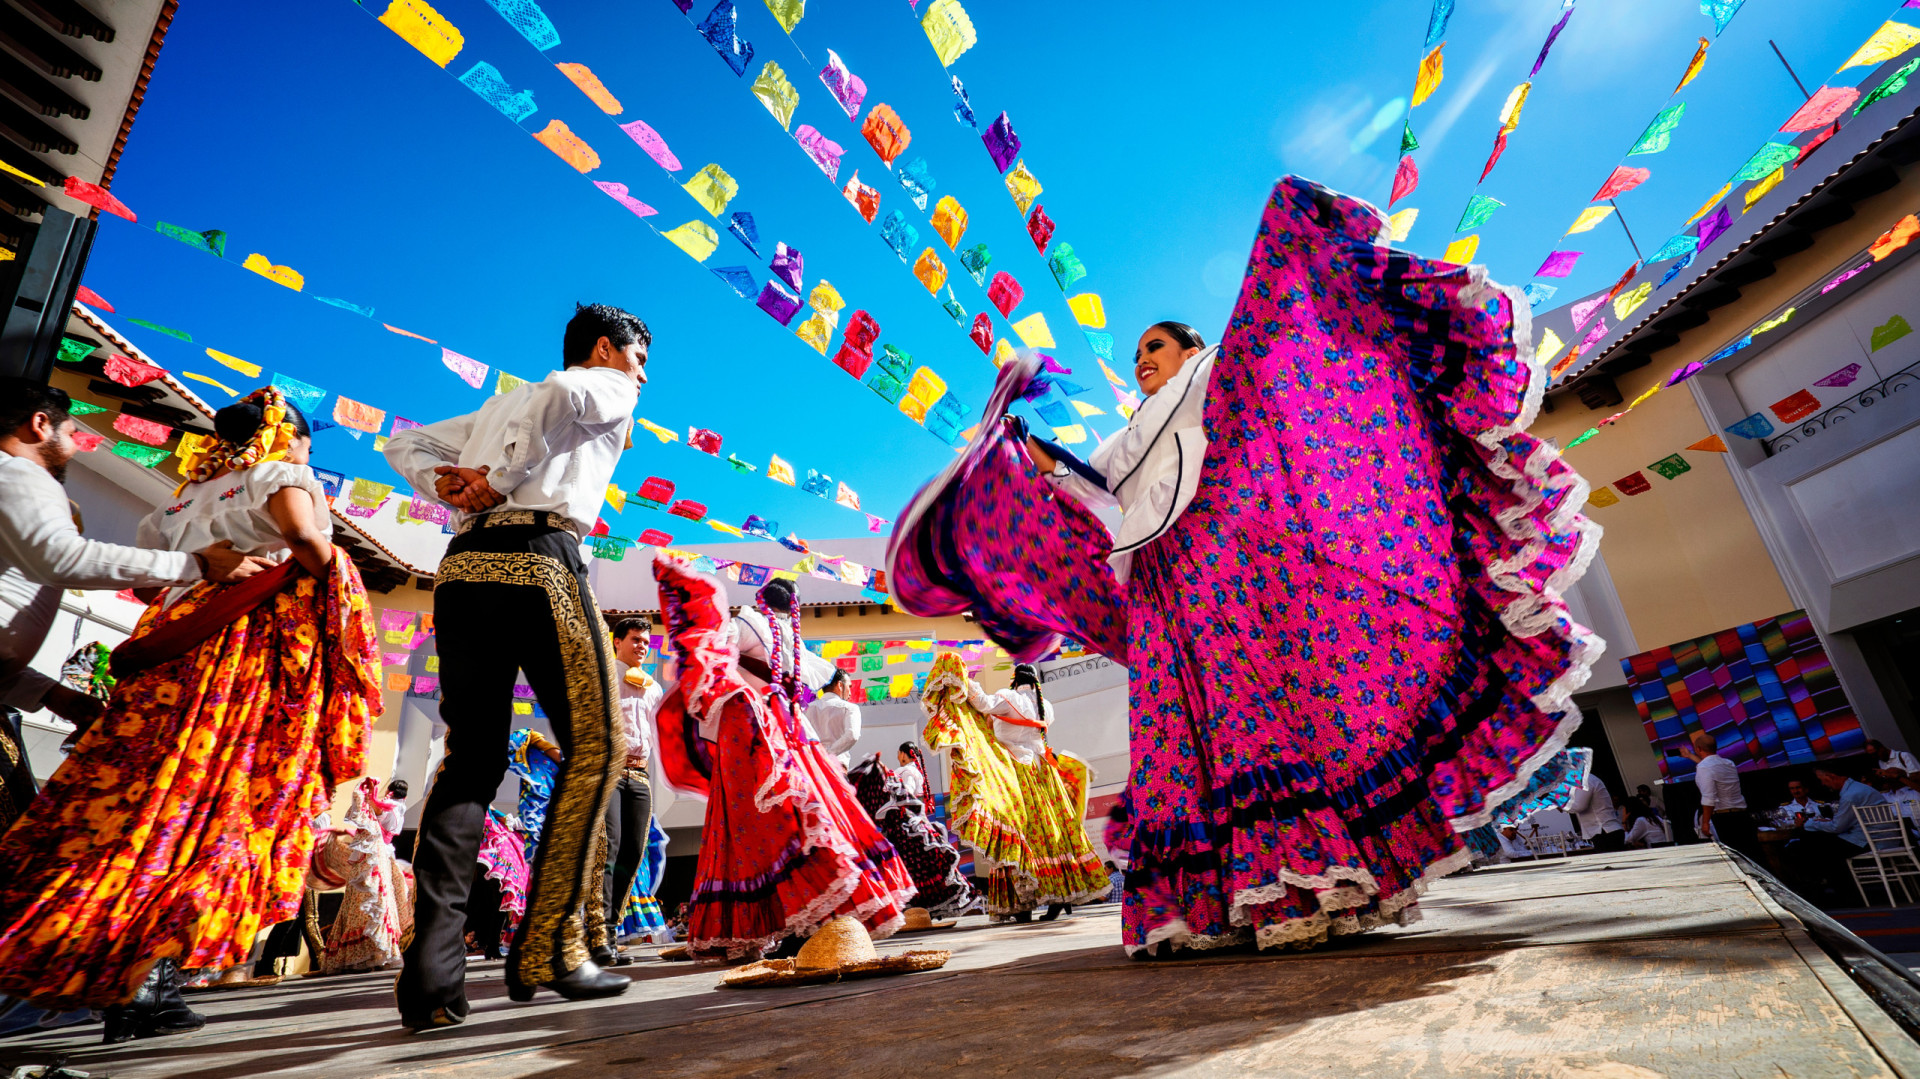 <p>On ne peut évoquer le Mexique sans penser à sa culture riche et colorée. Influencée par l'Espagne et les anciennes civilisations aztèque et maya, la cuisine mexicaine est aujourd'hui populaire dans le monde entier. Il suffit de penser aux tacos, aux enchiladas et aux burritos !</p><p><a href="https://www.msn.com/fr-fr/community/channel/vid-7xx8mnucu55yw63we9va2gwr7uihbxwc68fxqp25x6tg4ftibpra?cvid=94631541bc0f4f89bfd59158d696ad7e">Suivez-nous et accédez tous les jours à du contenu exclusif</a></p>